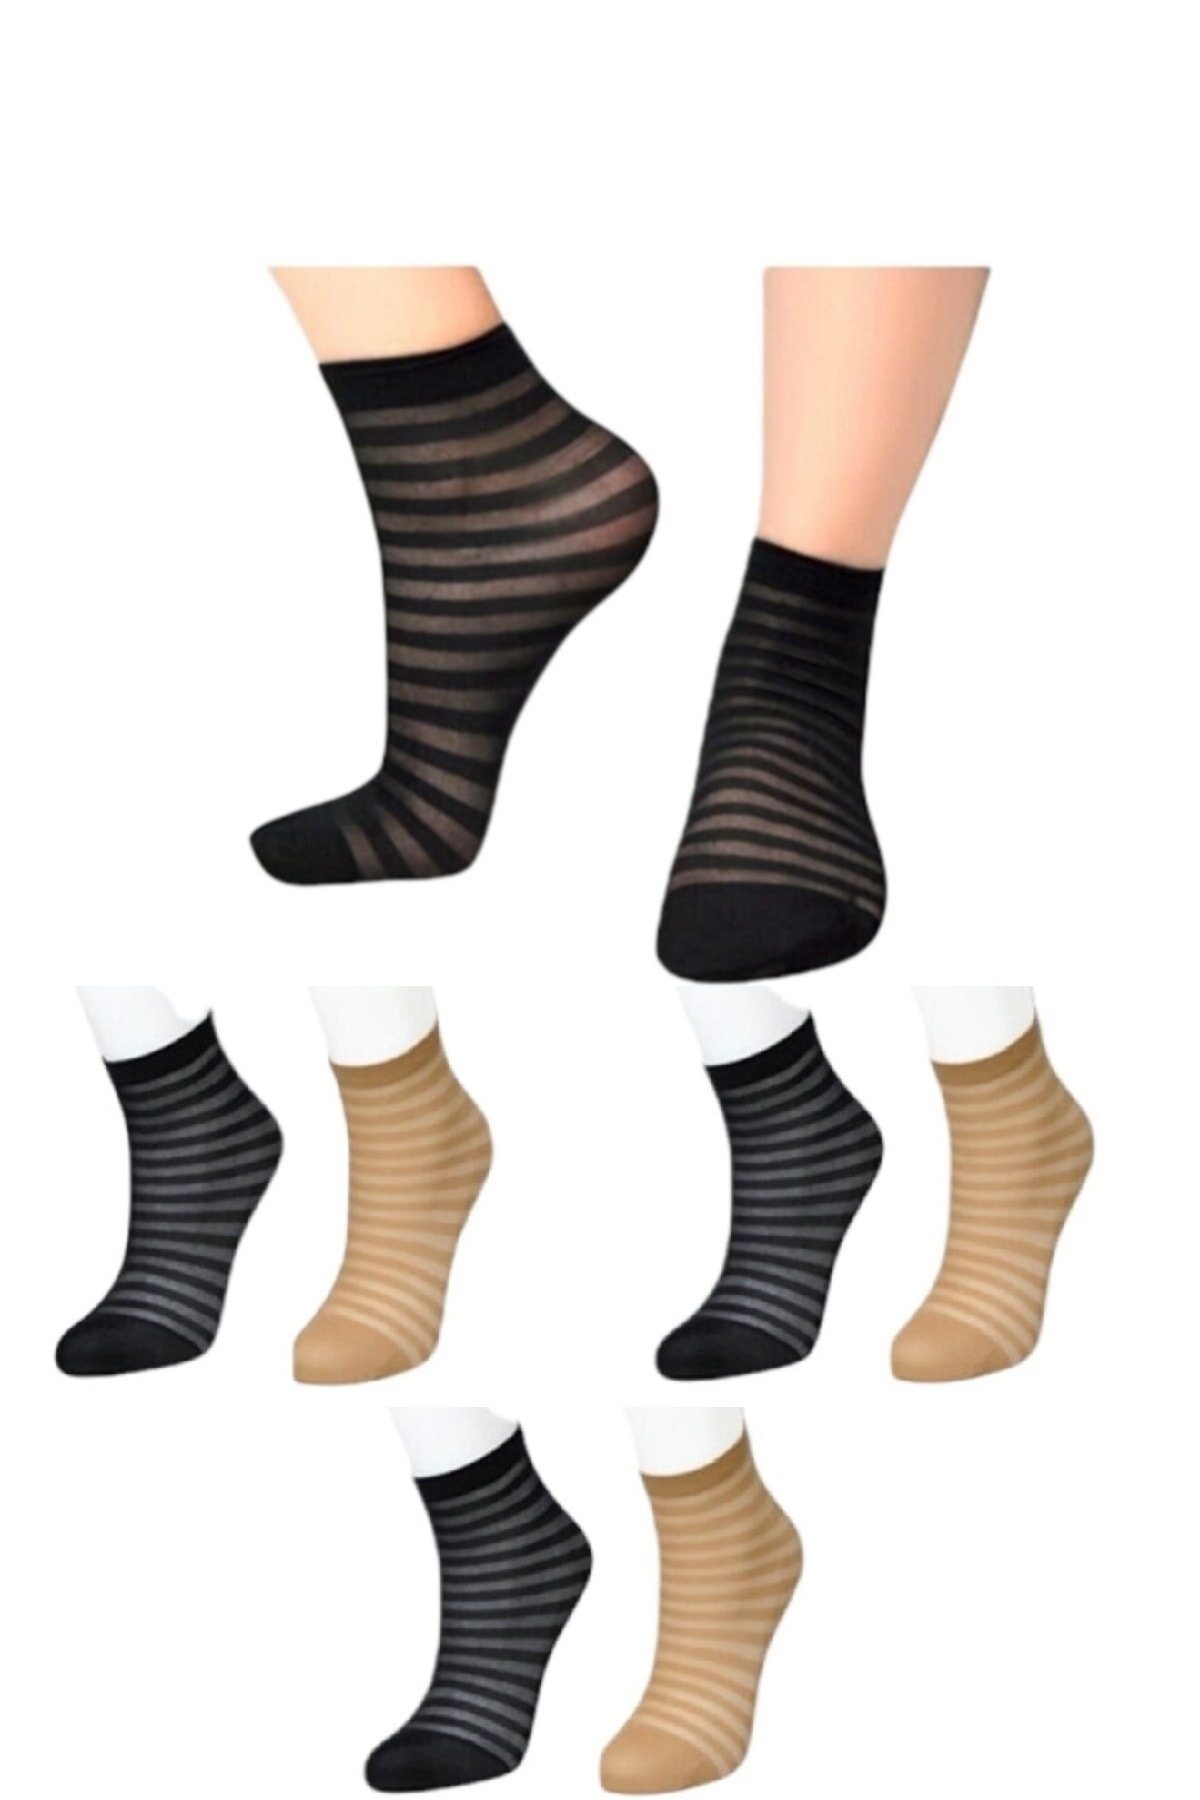 Meguca Socks Kadın Çemberli Tül Çorap Siyah Ve Ten Rengi 6 Çift